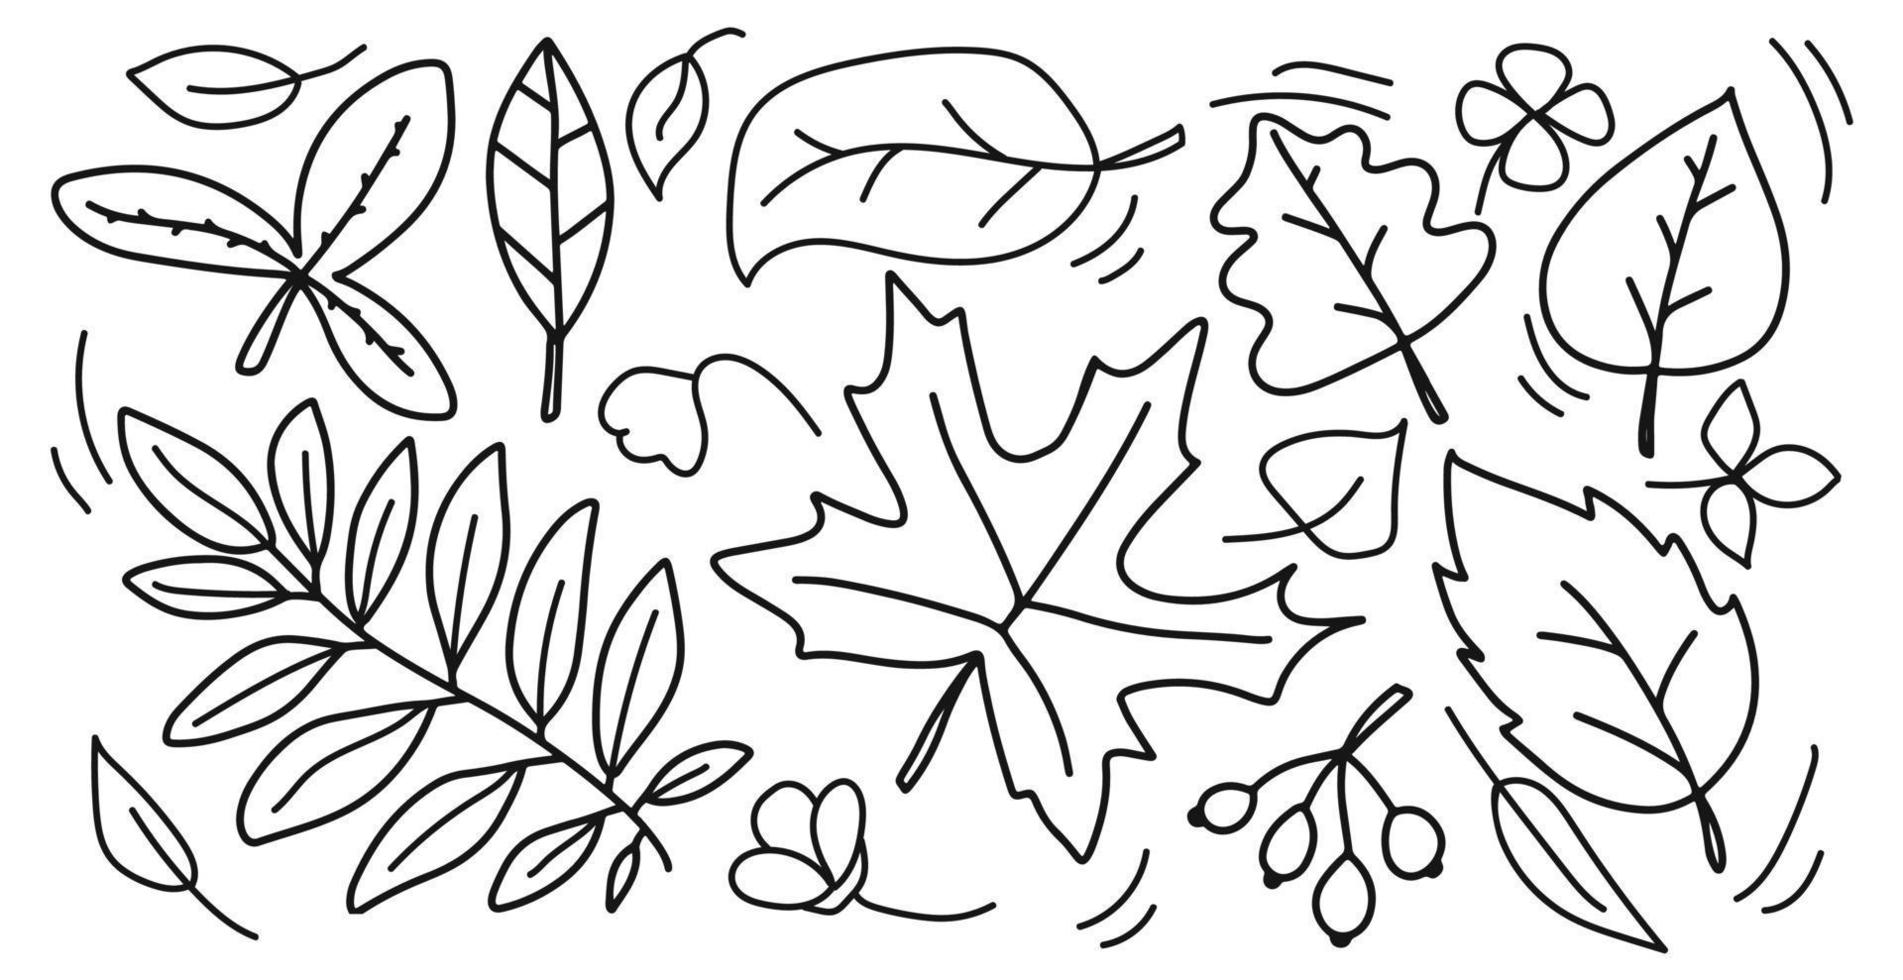 coleção de folhas de outono em estilo doodle desenhado à mão. folhas diferentes. elementos de queda isolados no fundo branco. vetor